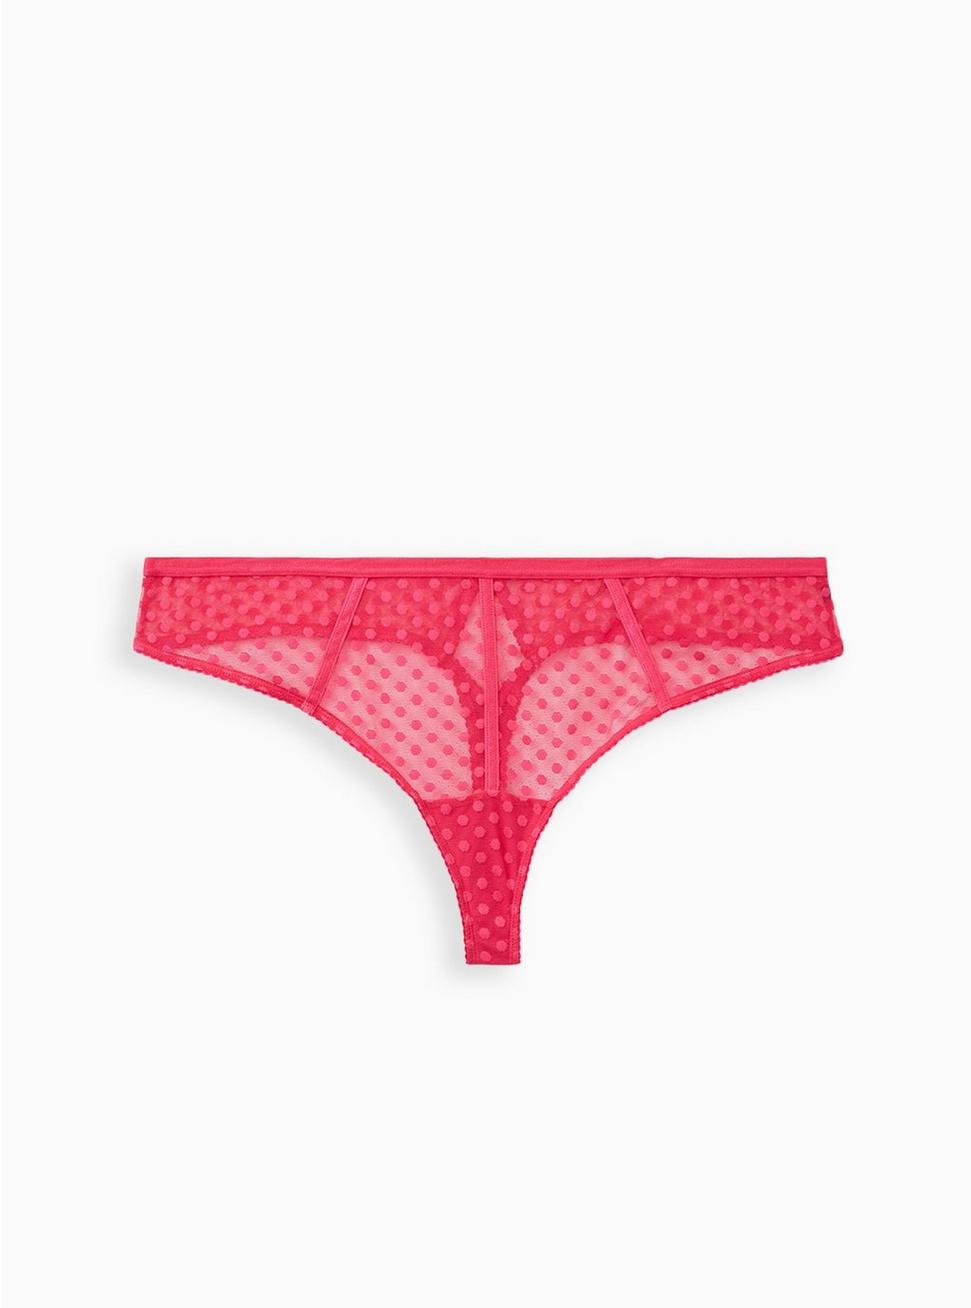 Plus Size - Pink Dot Mesh Cut Out Thong Panty - Torrid